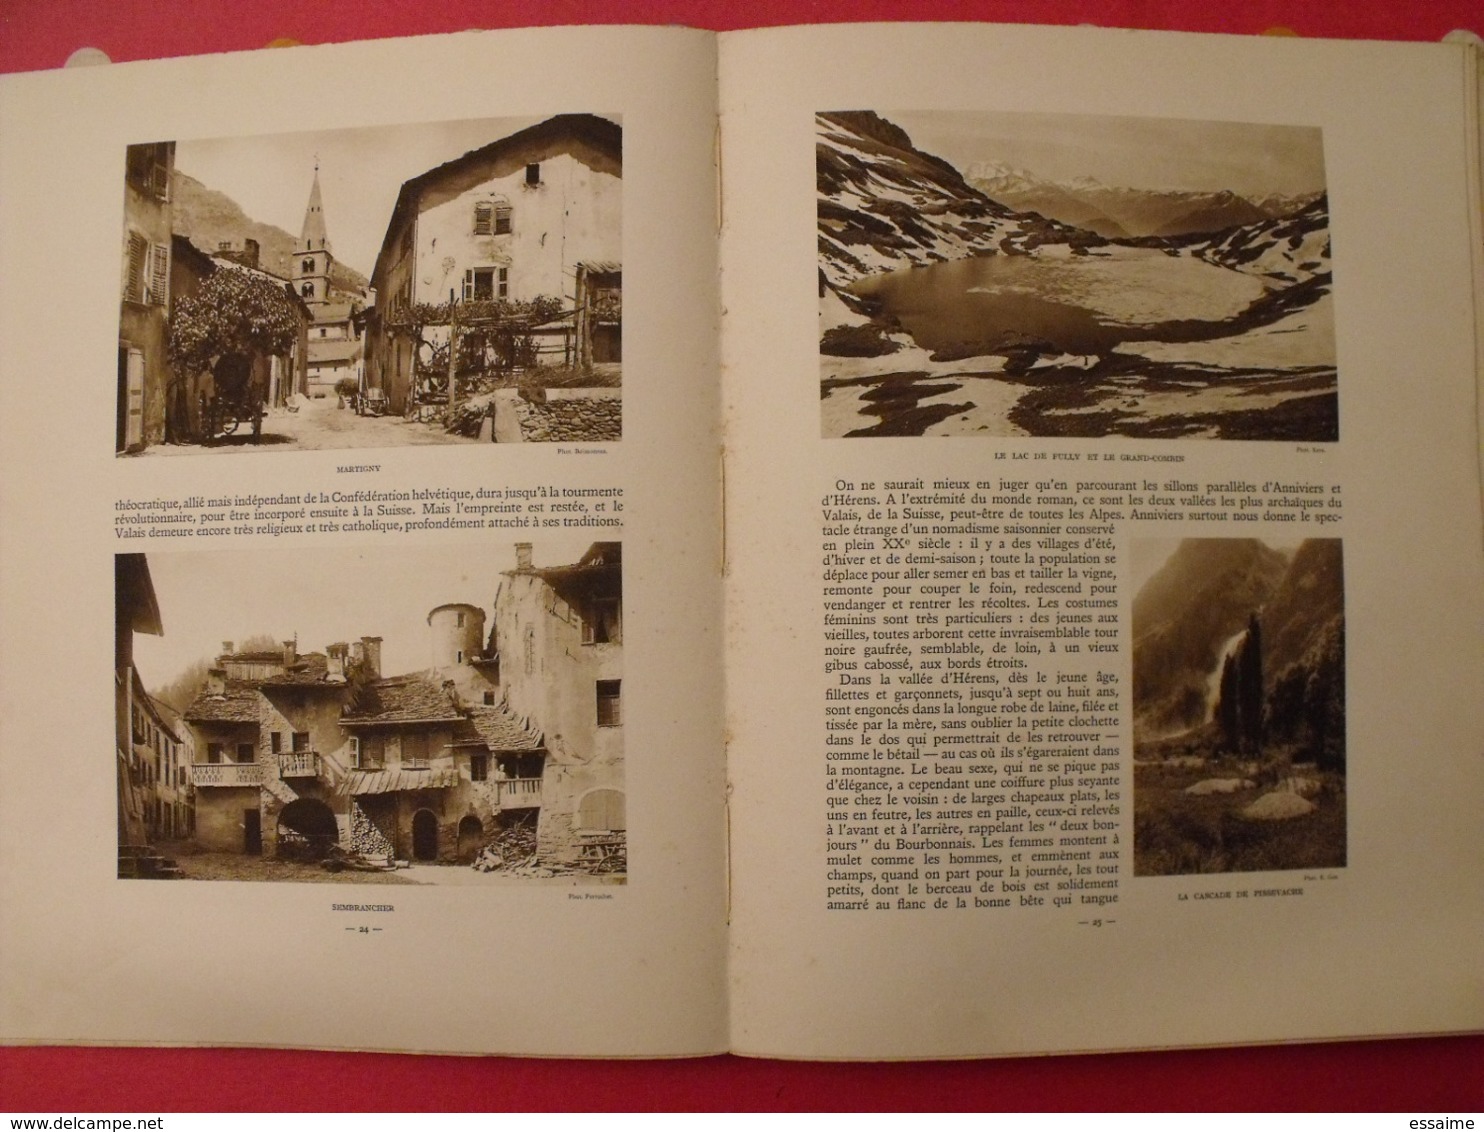 le Rhône des Alpes à la mer. Albert Dauzat. Alpina Paris 1928. exemplaire numéroté.